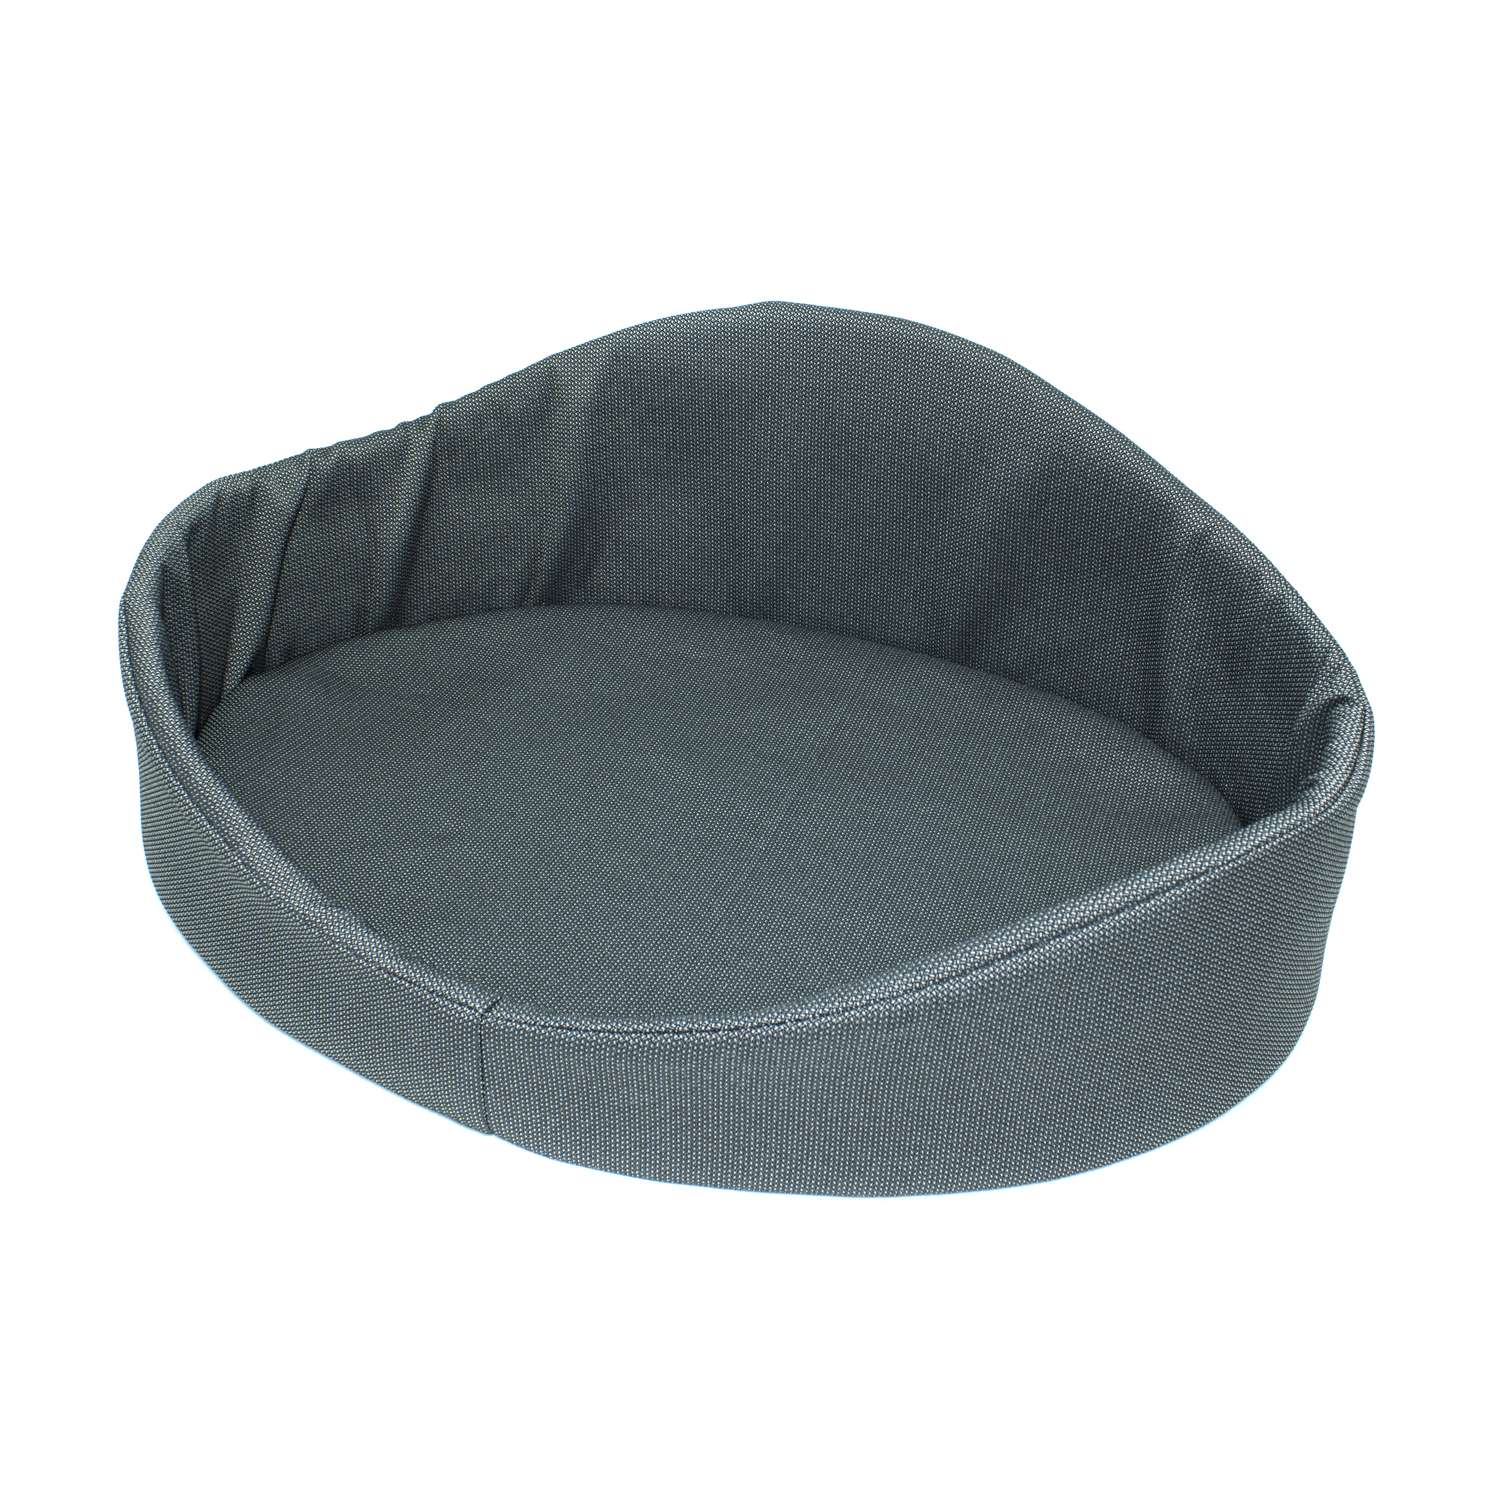 Лежак для кошек ТБДД темно серый - фото 1